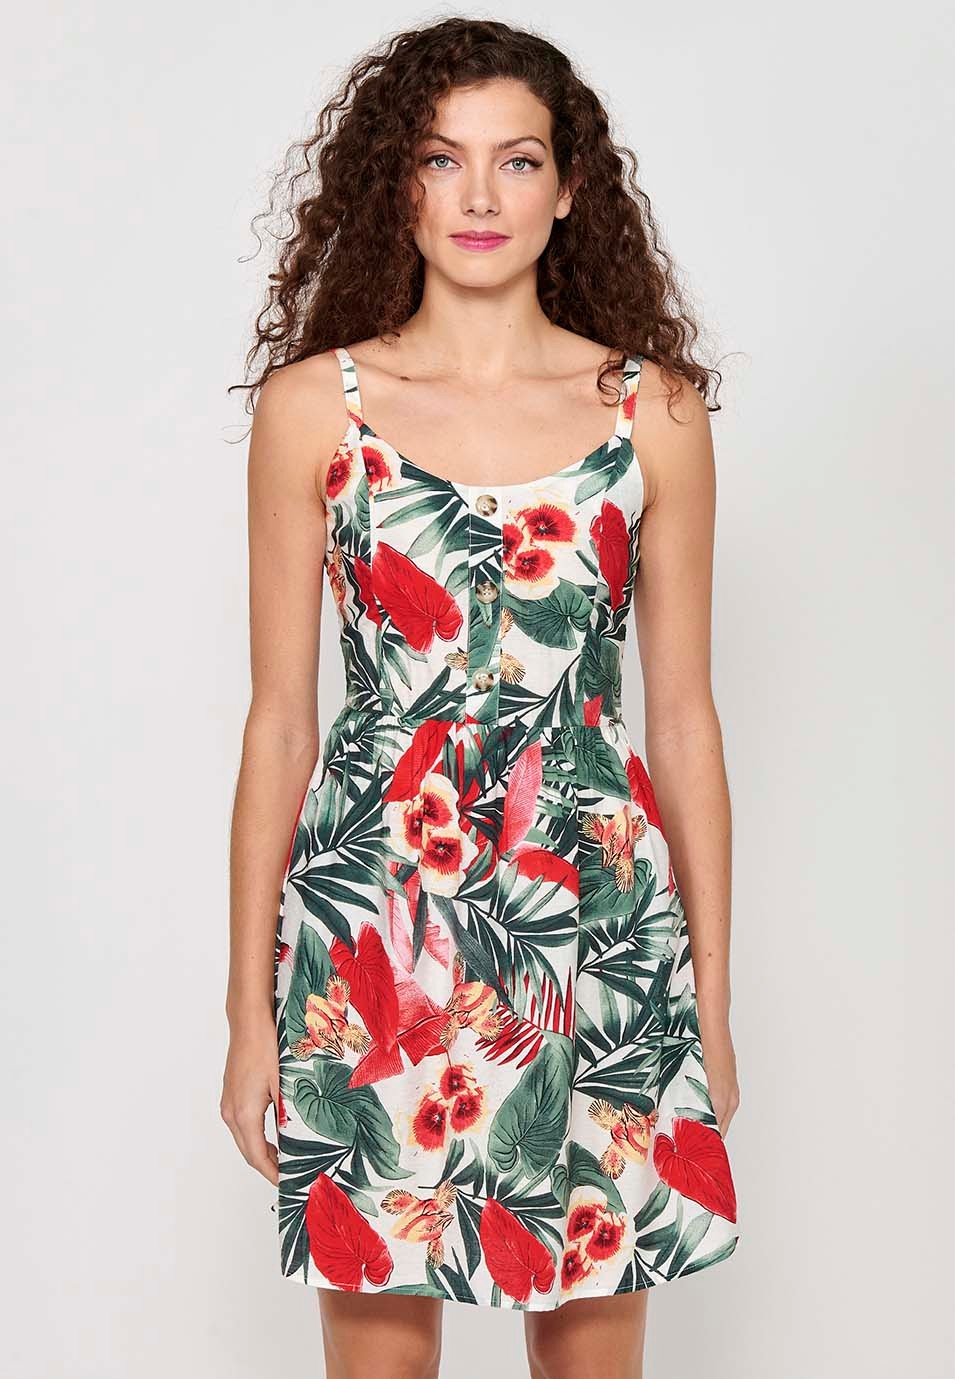 Robe pour femme à imprimé floral tropical, col en V, bretelles boutonnées sur le devant, dos caoutchouté, multicolore 7